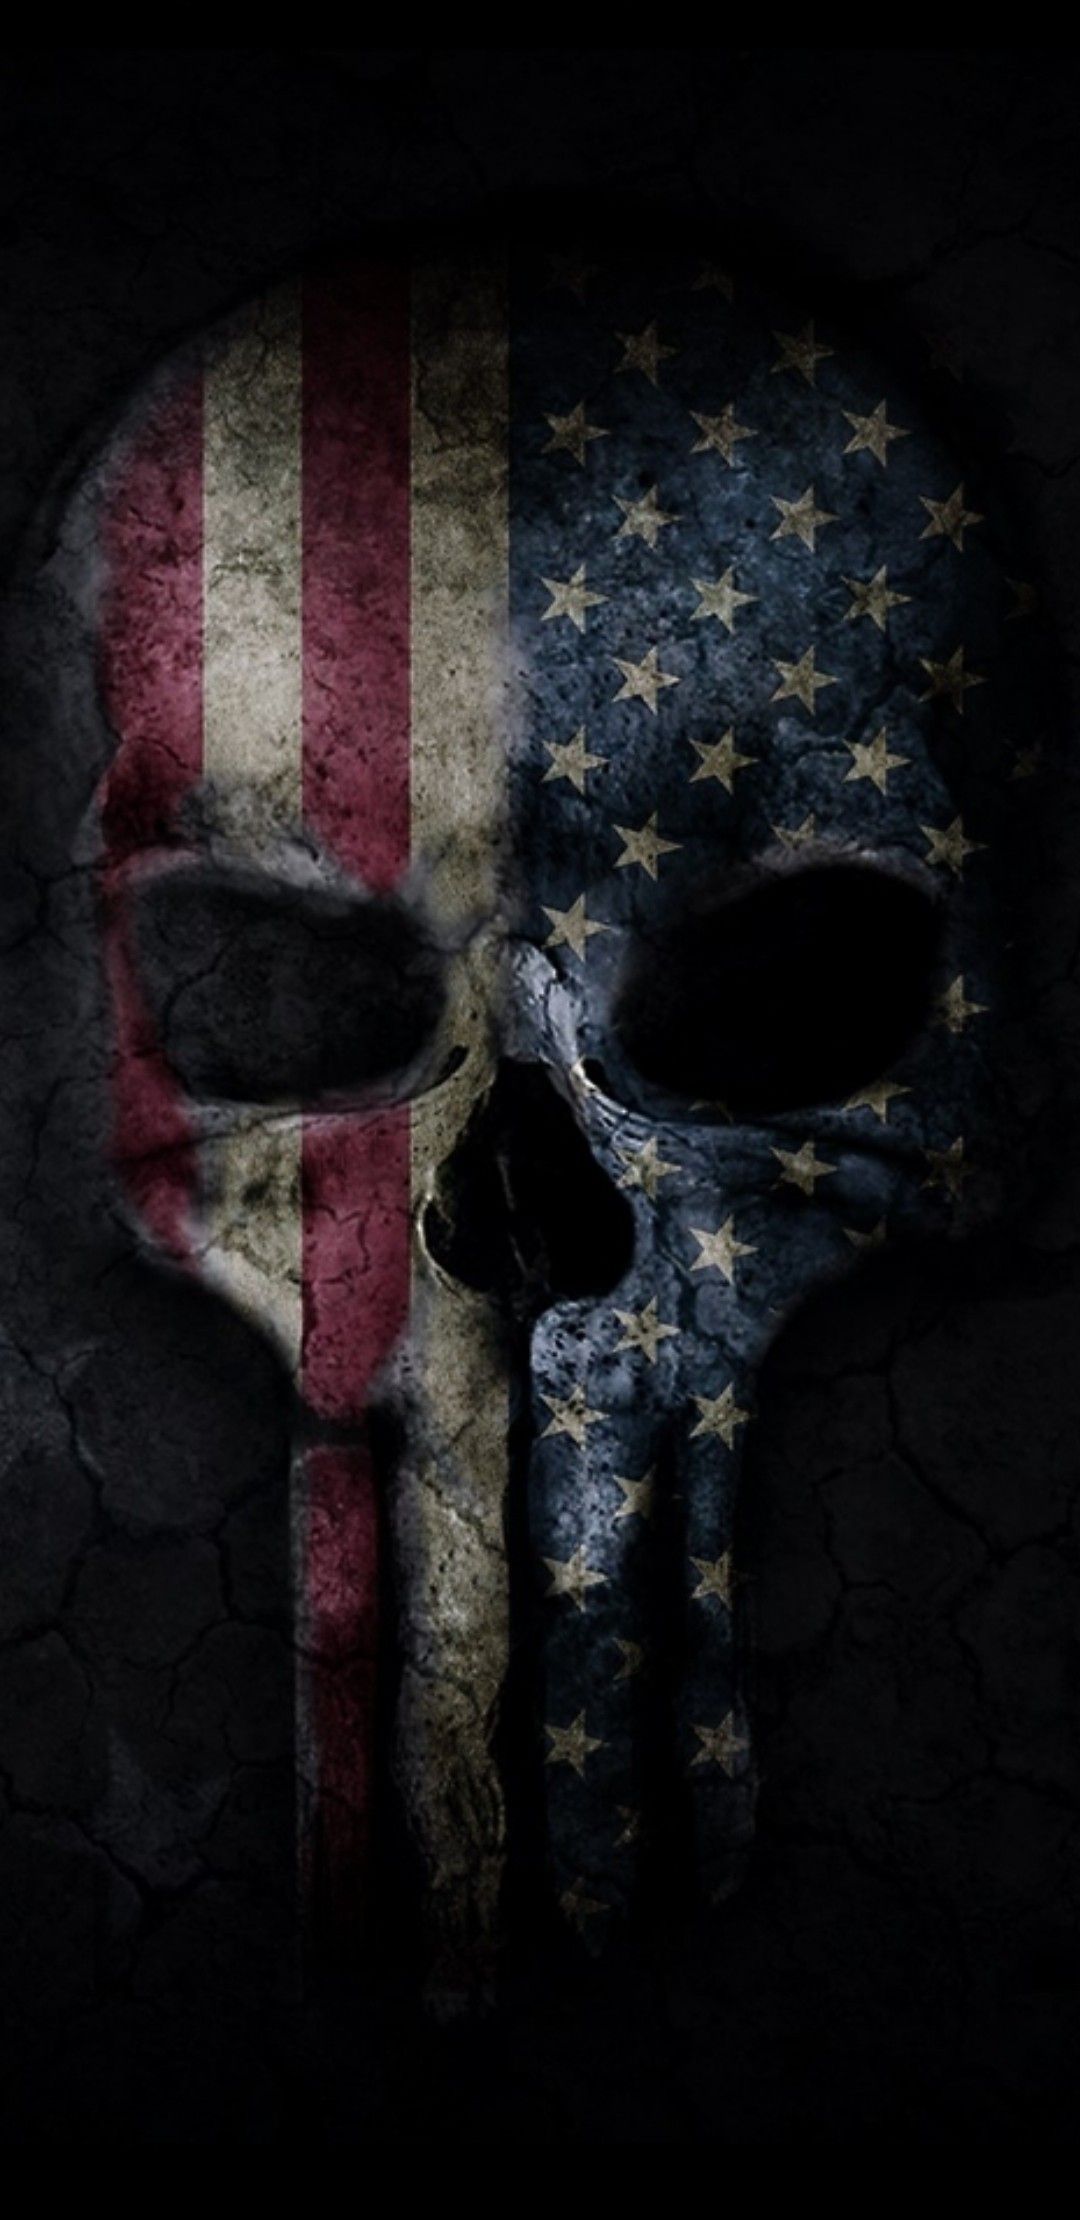 skulls, Grim reaper. American flag image